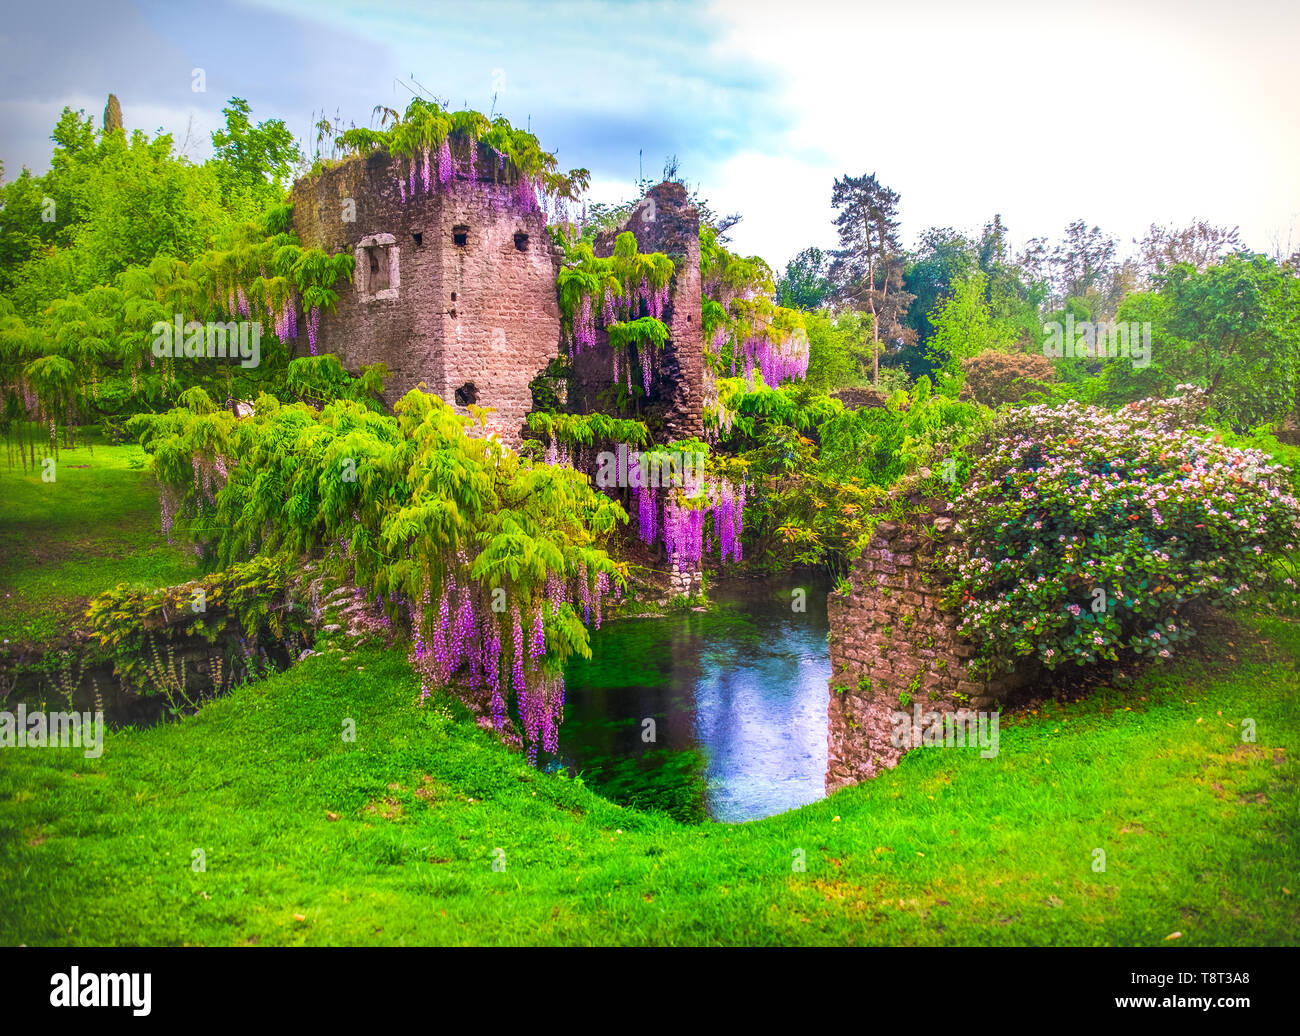 Les fleurs de glycine dans fairy garden de ninfa en Italie - tour médiévale ruine entourée de river Banque D'Images